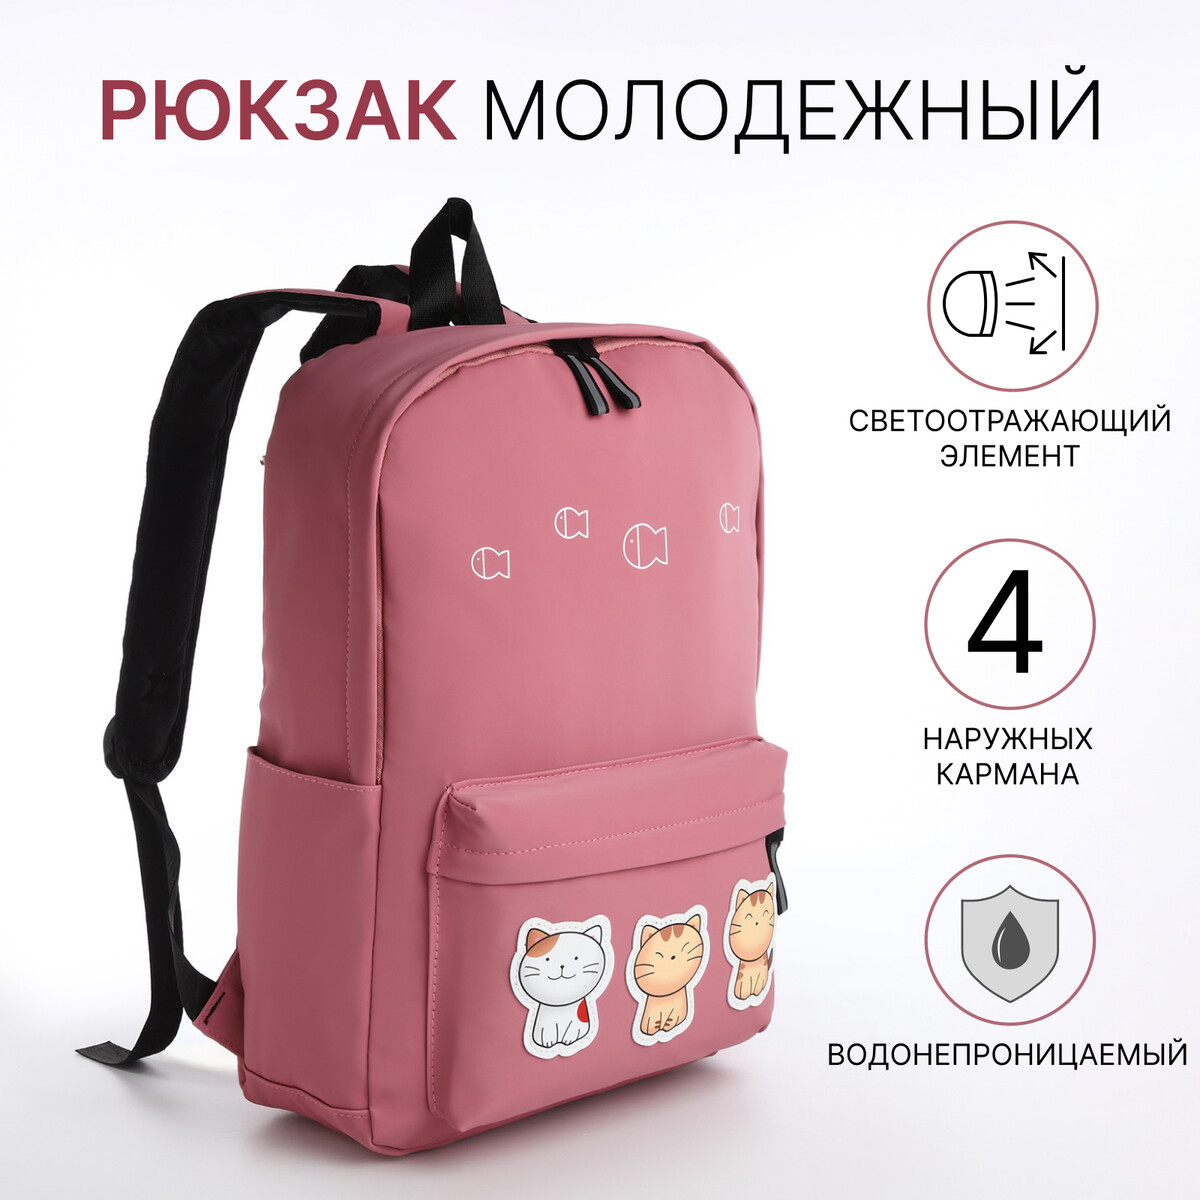 Рюкзак молодежный из текстиля на молнии, 4 кармана, цвет розовый рюкзак молодежный из текстиля на молнии 4 кармана